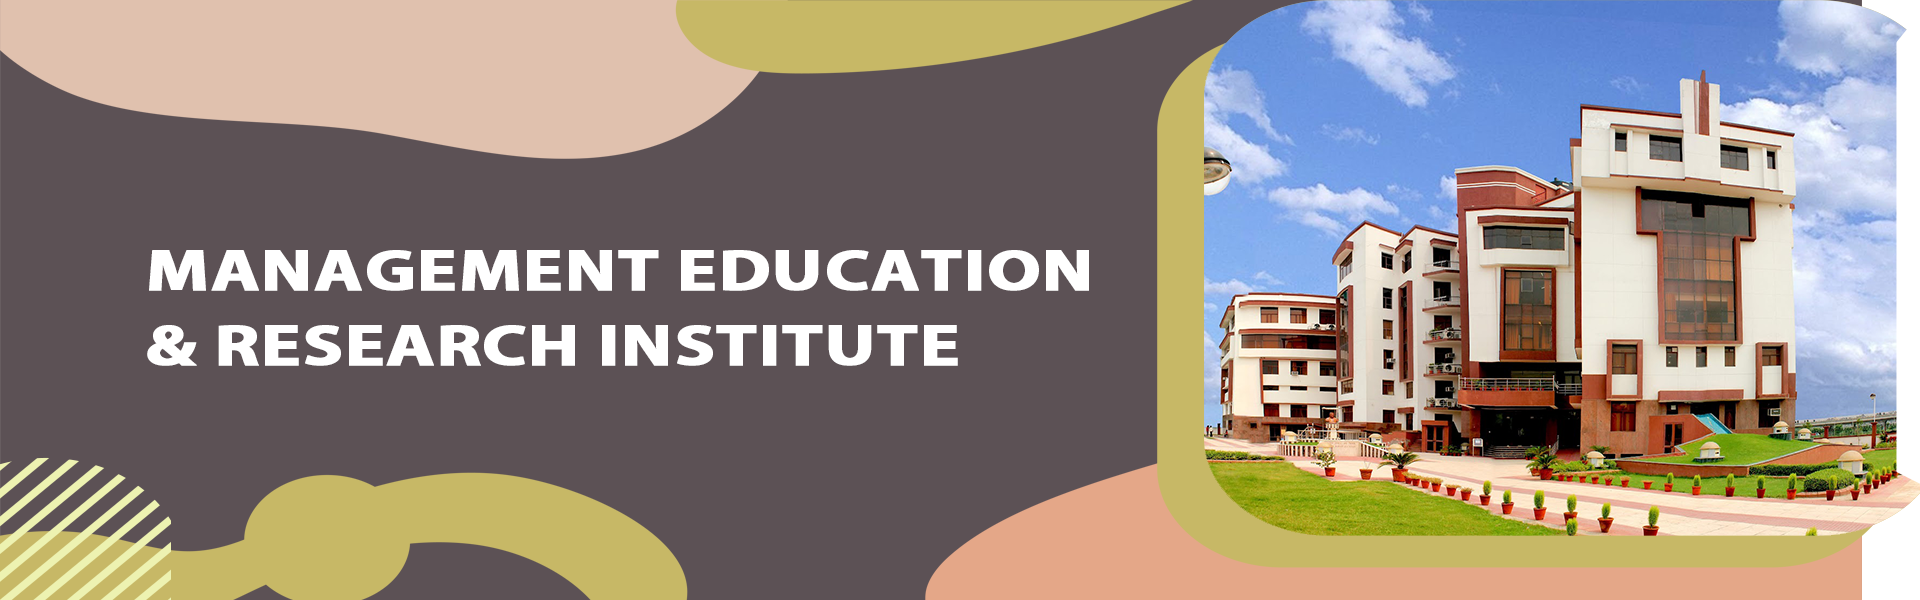 Management Education & Research Institute - [MERI], New Delhi